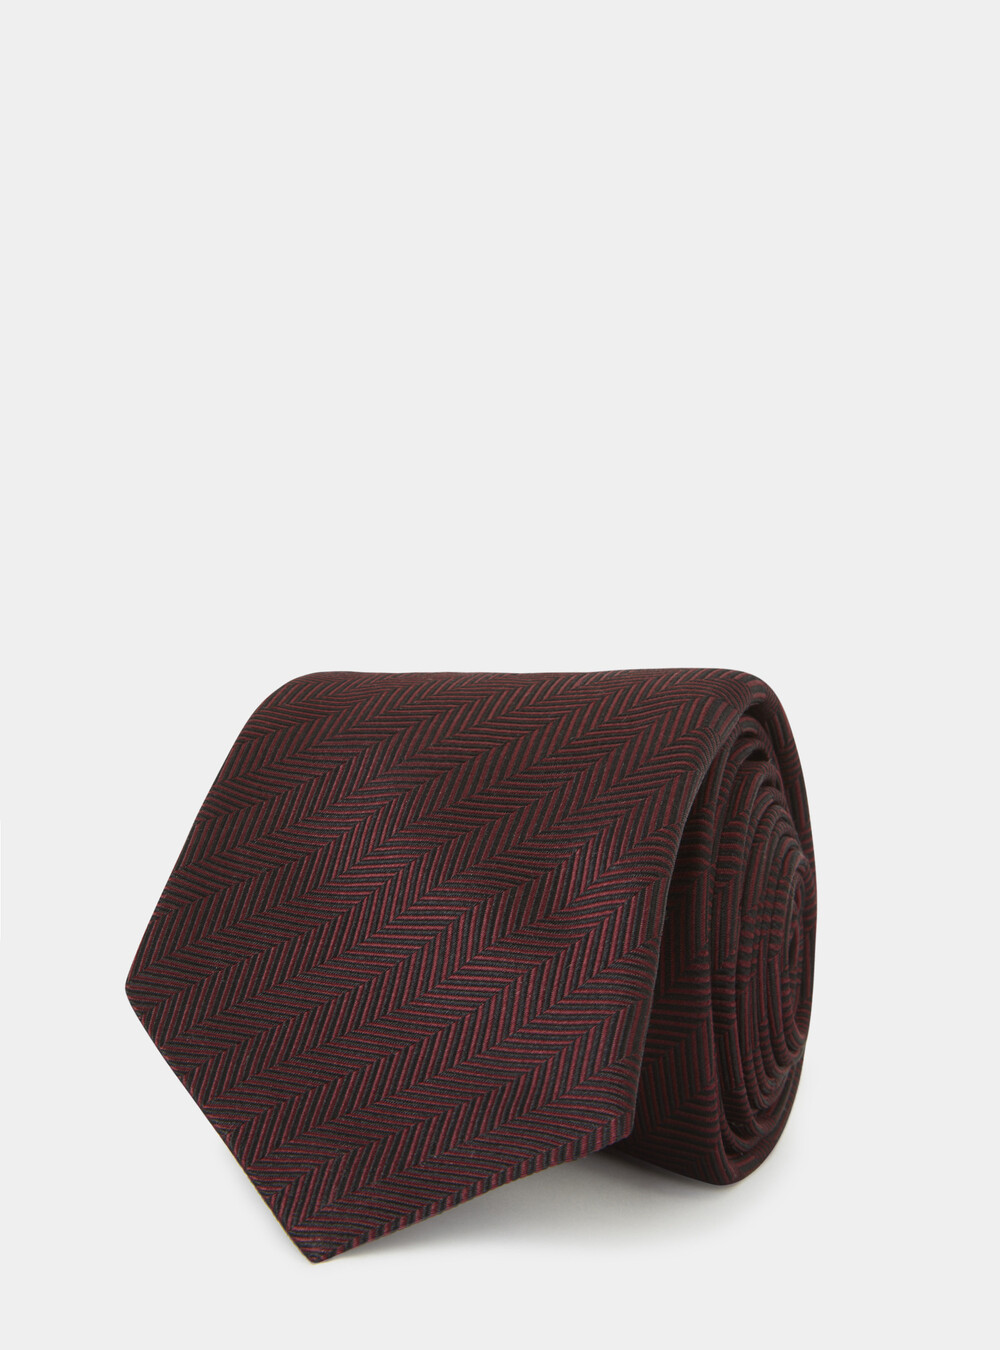 Cravatte Gutteridge | Accessorio Maschile per Eccellenza